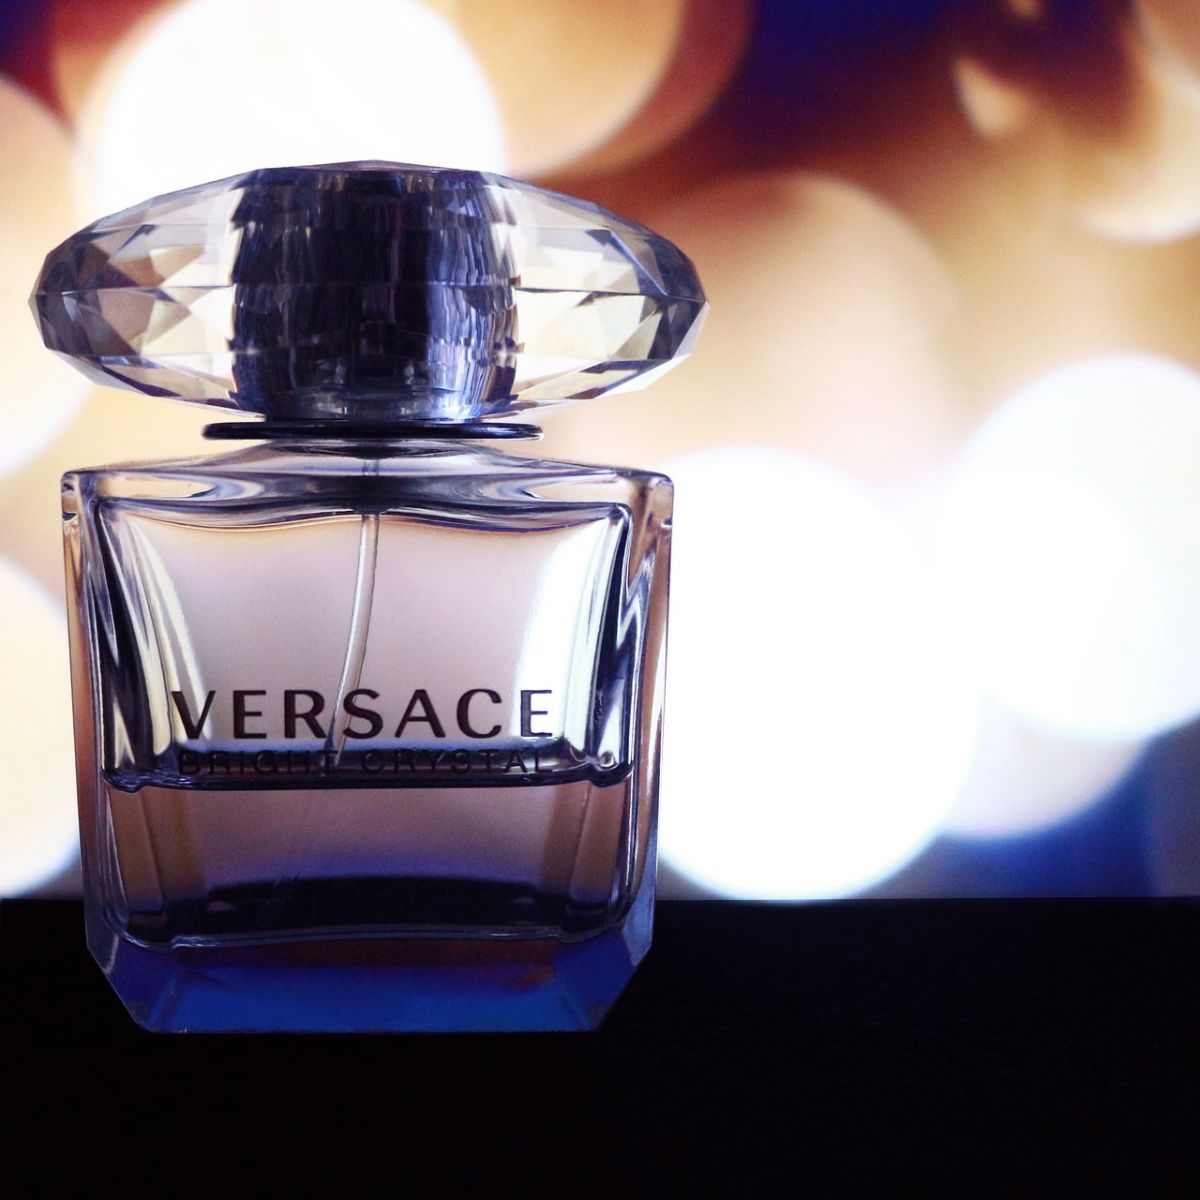 Versace Michael Kors Acquisition 2